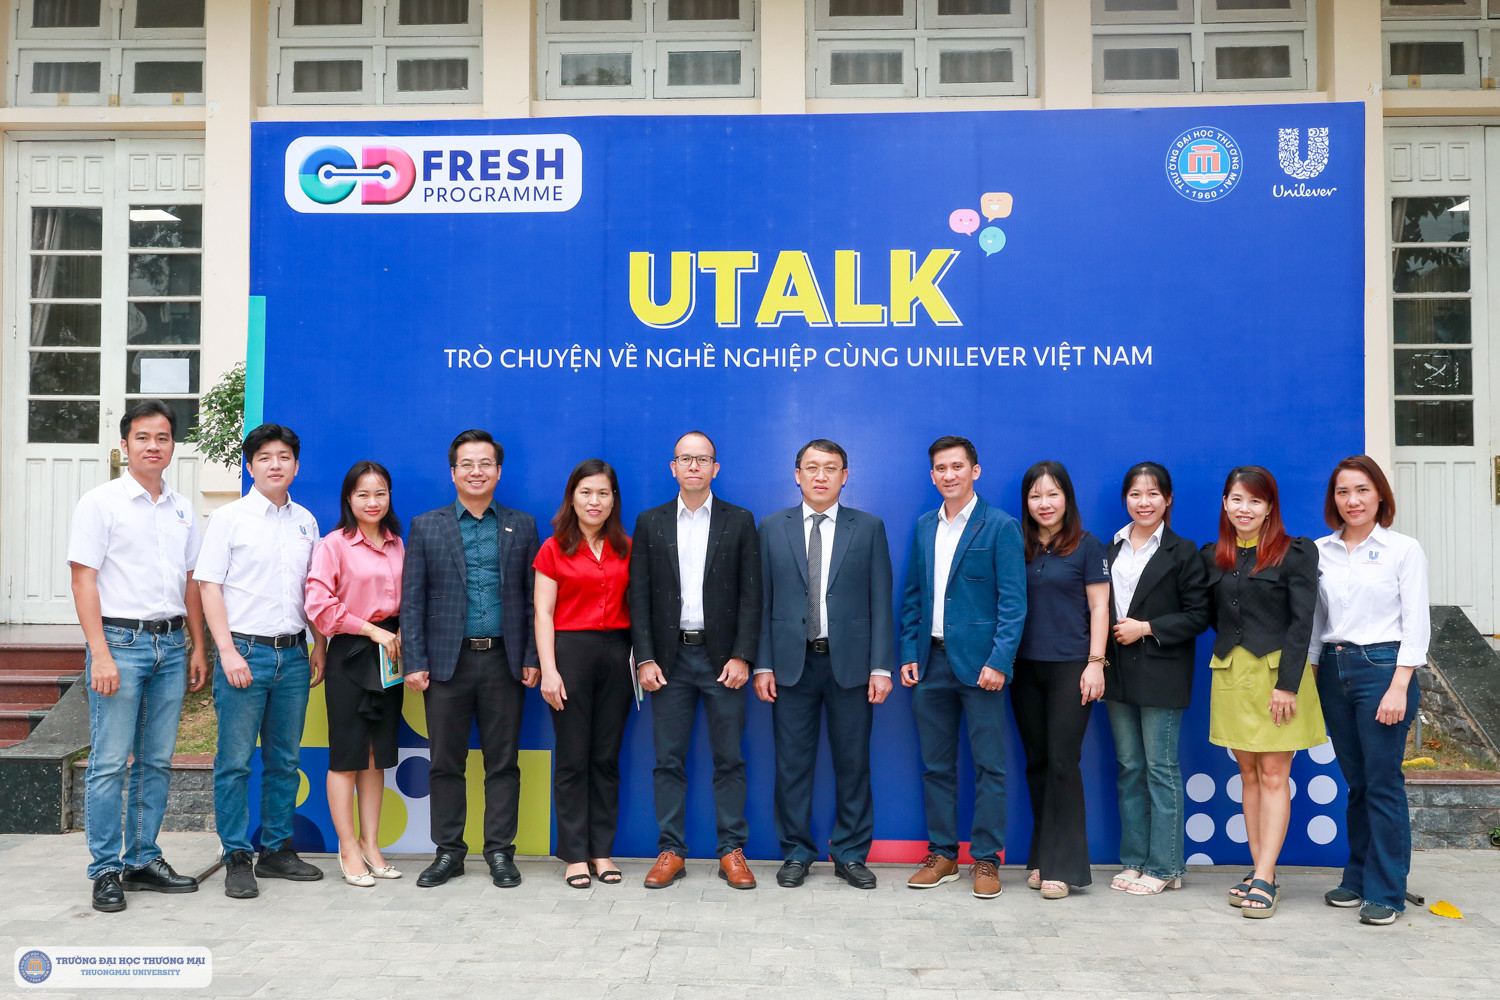 Tọa đàm hướng nghiệp và giới thiệu chương trình đào tạo thực tập sinh tài năng, phỏng vấn tuyển dụng vị trí giám sát kinh doanh của công ty Unilever Việt Nam